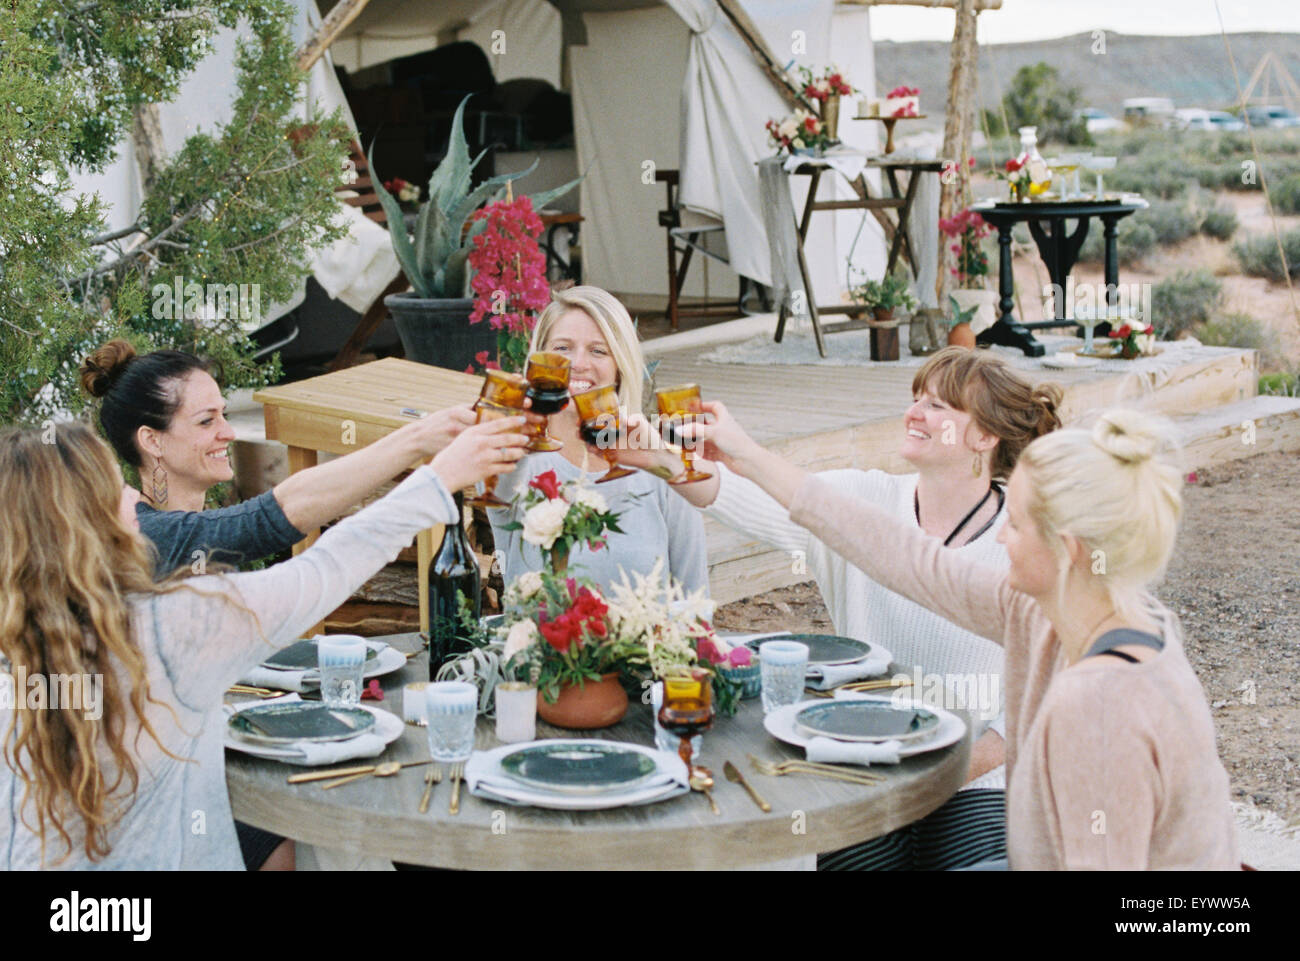 Un groupe de femmes bénéficiant d'un repas en plein air par une grande tente, dans un paysage désertique, porter un toast par clinking glasses. Banque D'Images